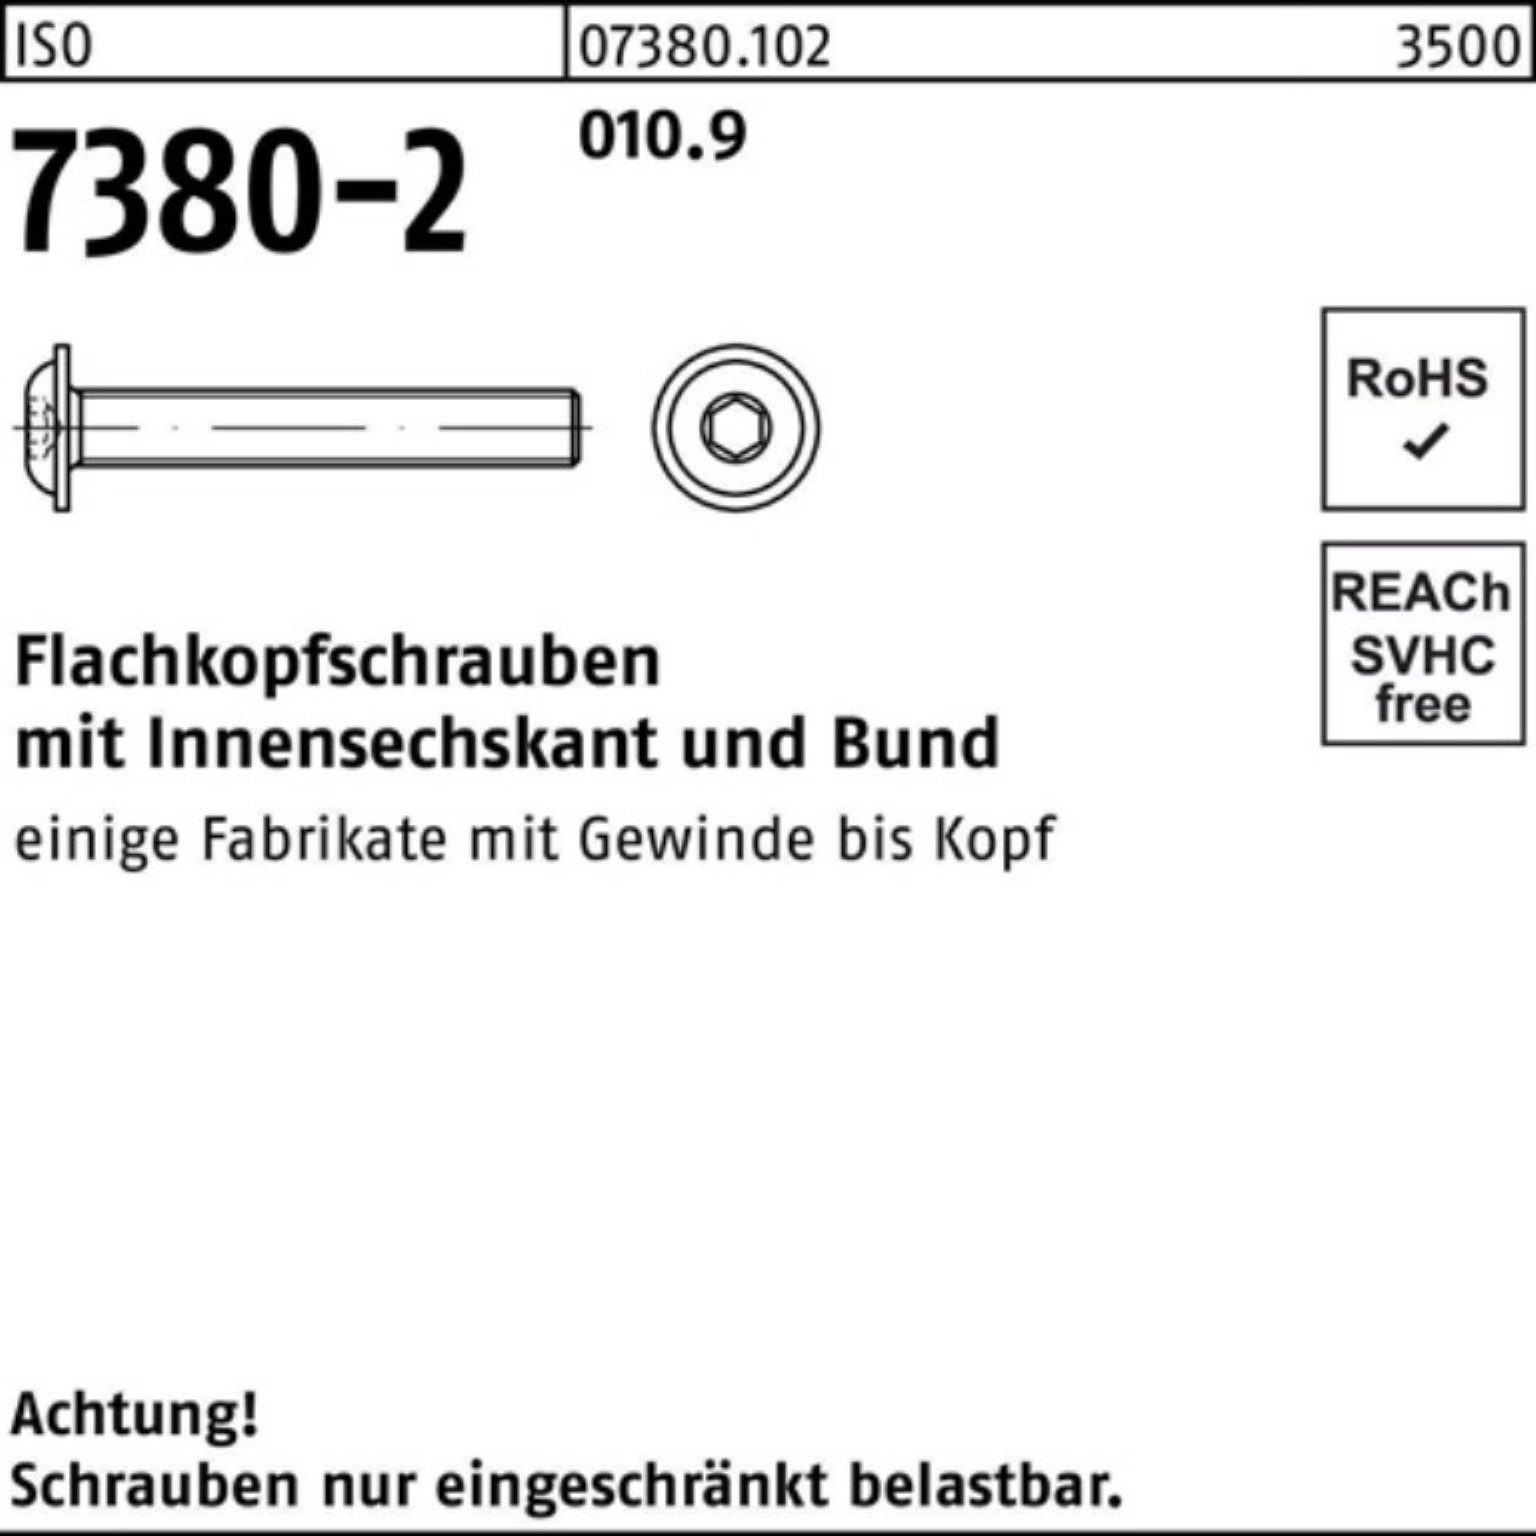 Bund/Innen-6kt 200er 12 7380-2 010.9 ISO Reyher Schraube M8x Pack Flachkopfschraube 20